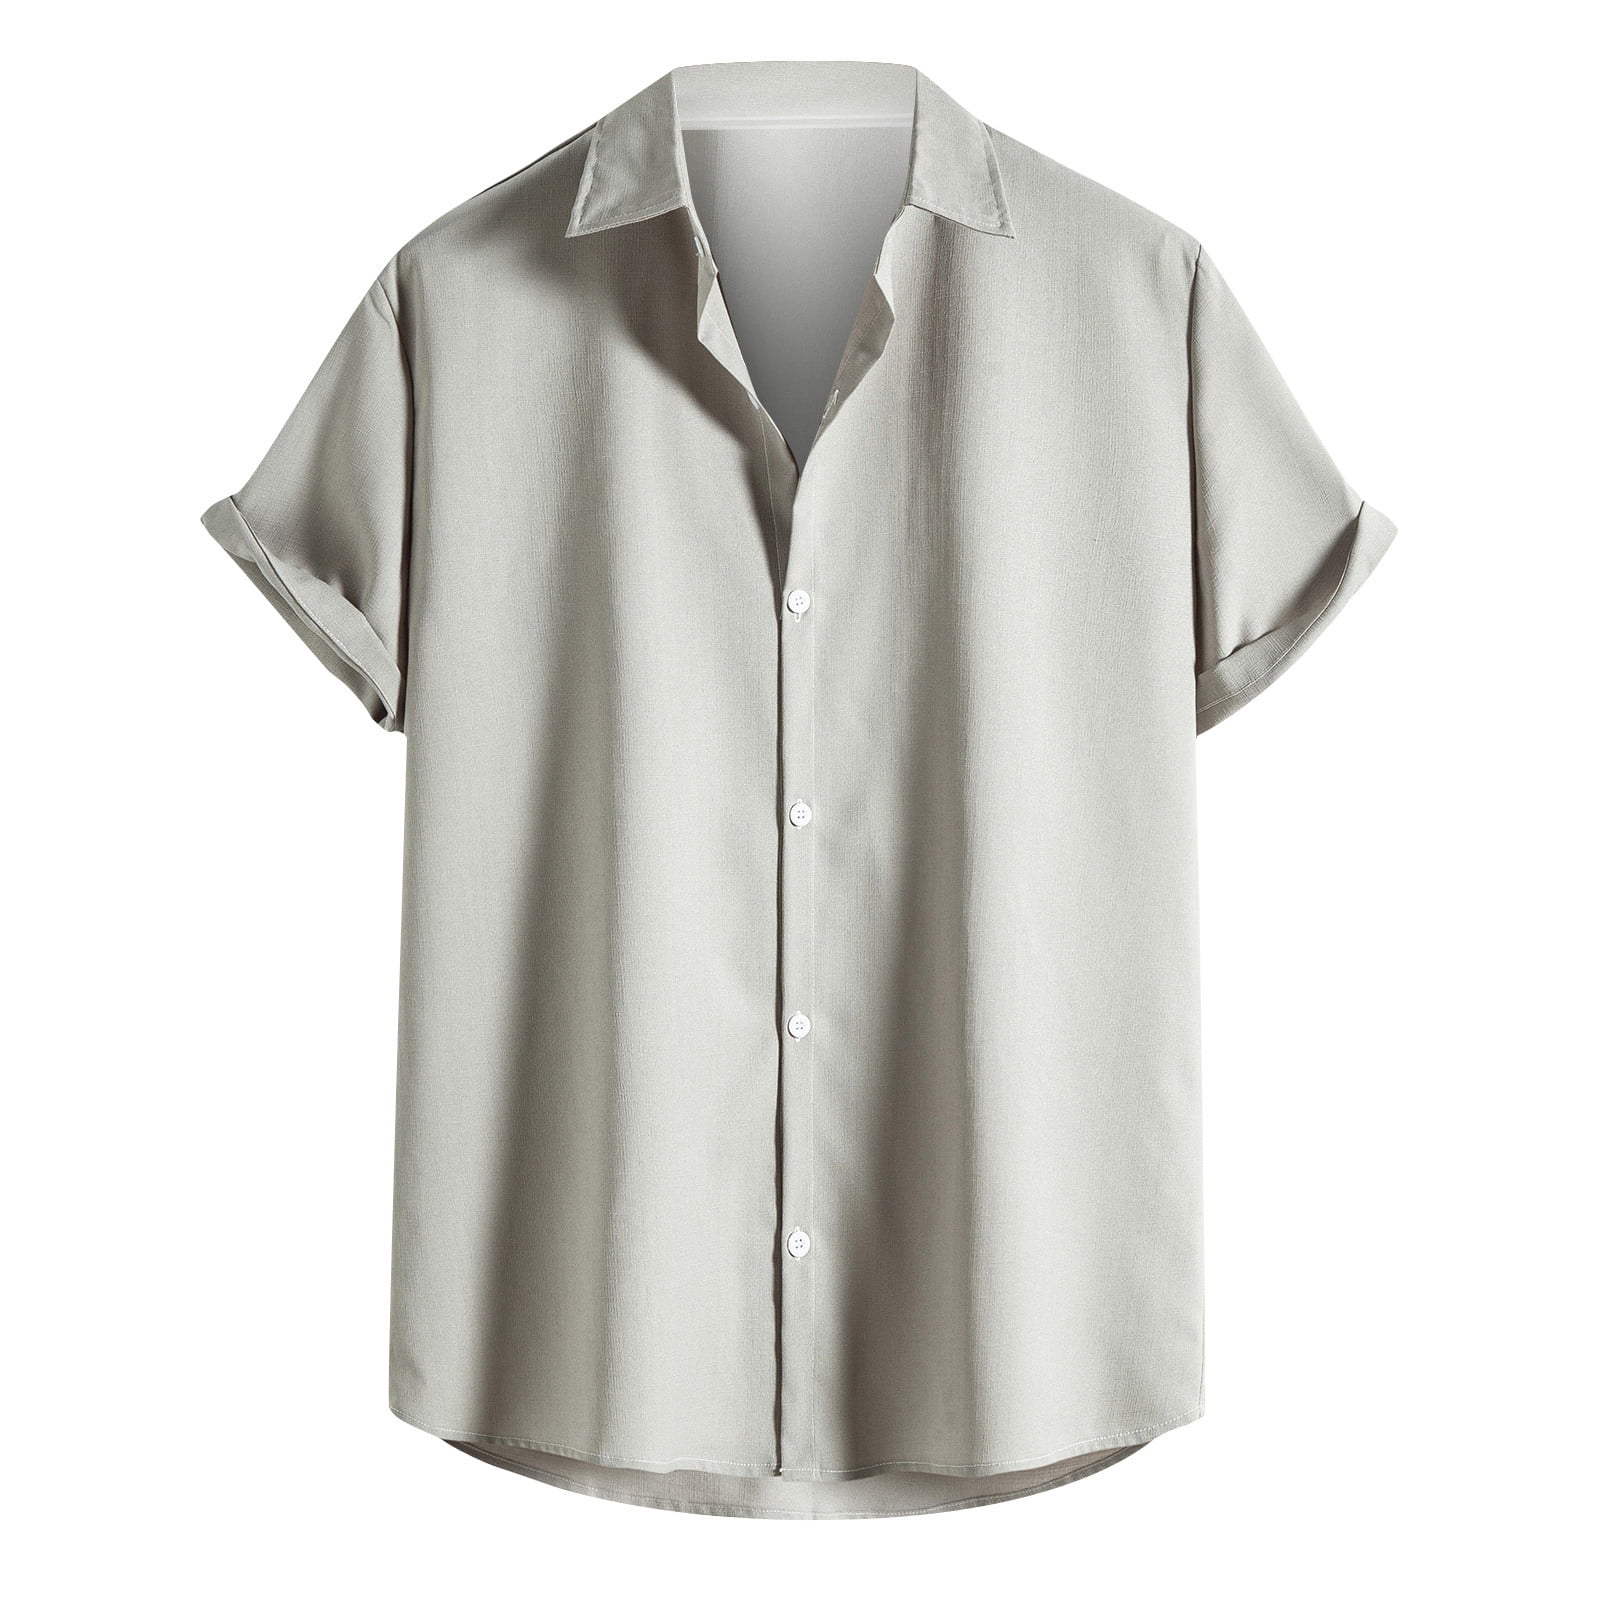 15 Grandad-collar Short Sleeve Shirt-Button Thru-Cotton S-2XL Casual Shirt 